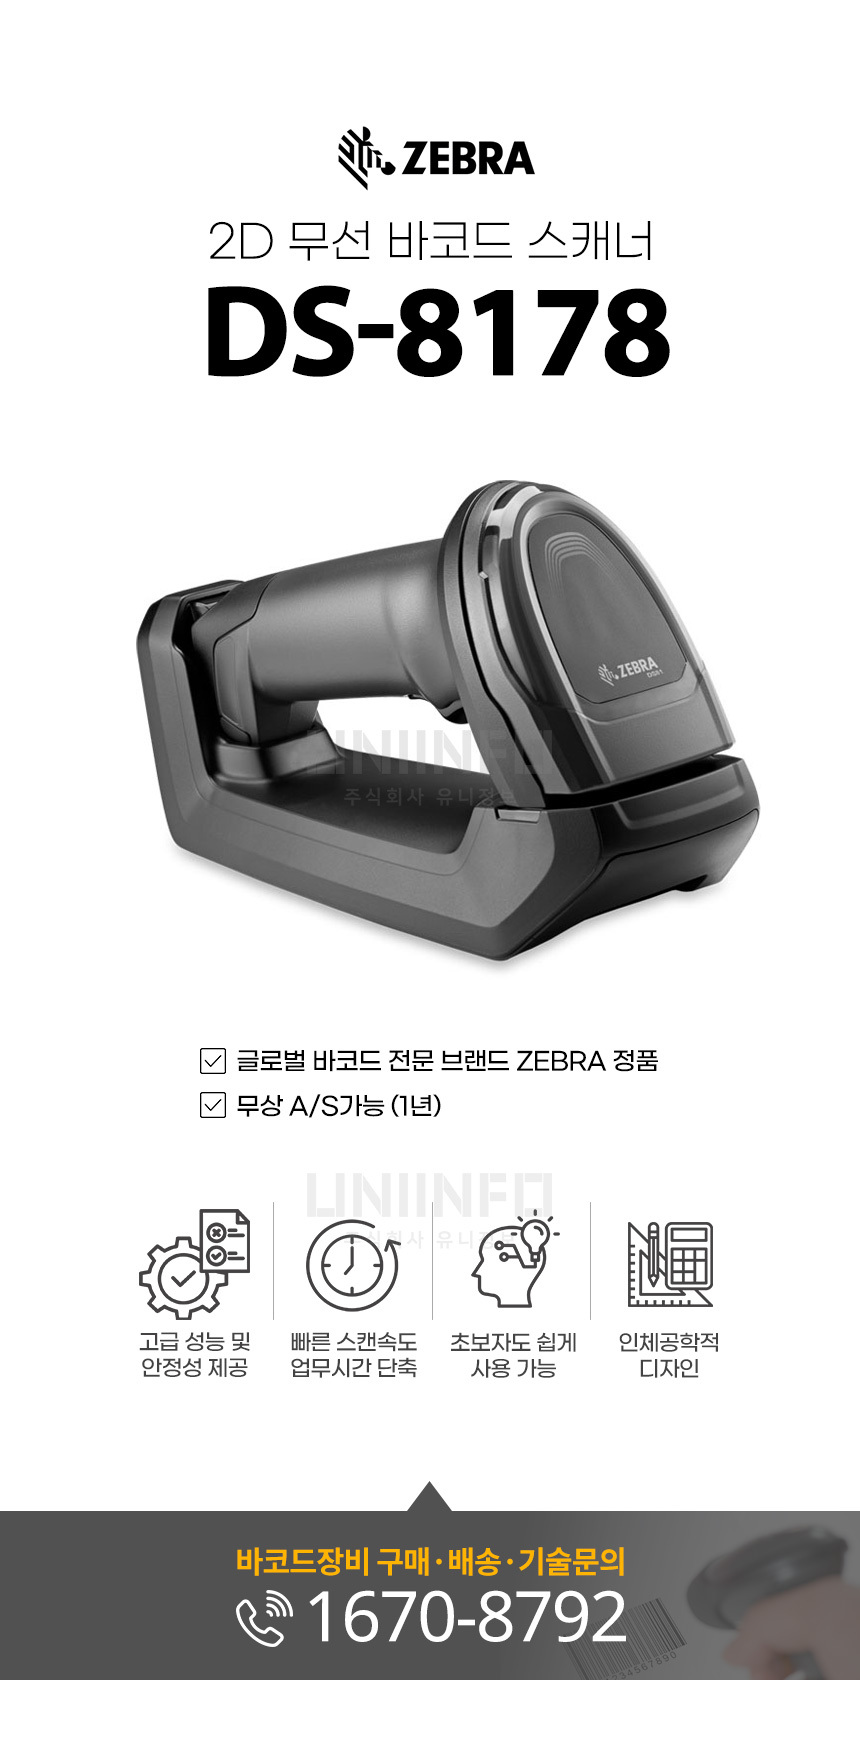 ZEBRA 2D 무선 바코드 스캐너 DS-8178 글로벌 바코드 전문 브랜드 지브라 정품 무상 AS 1년 가능